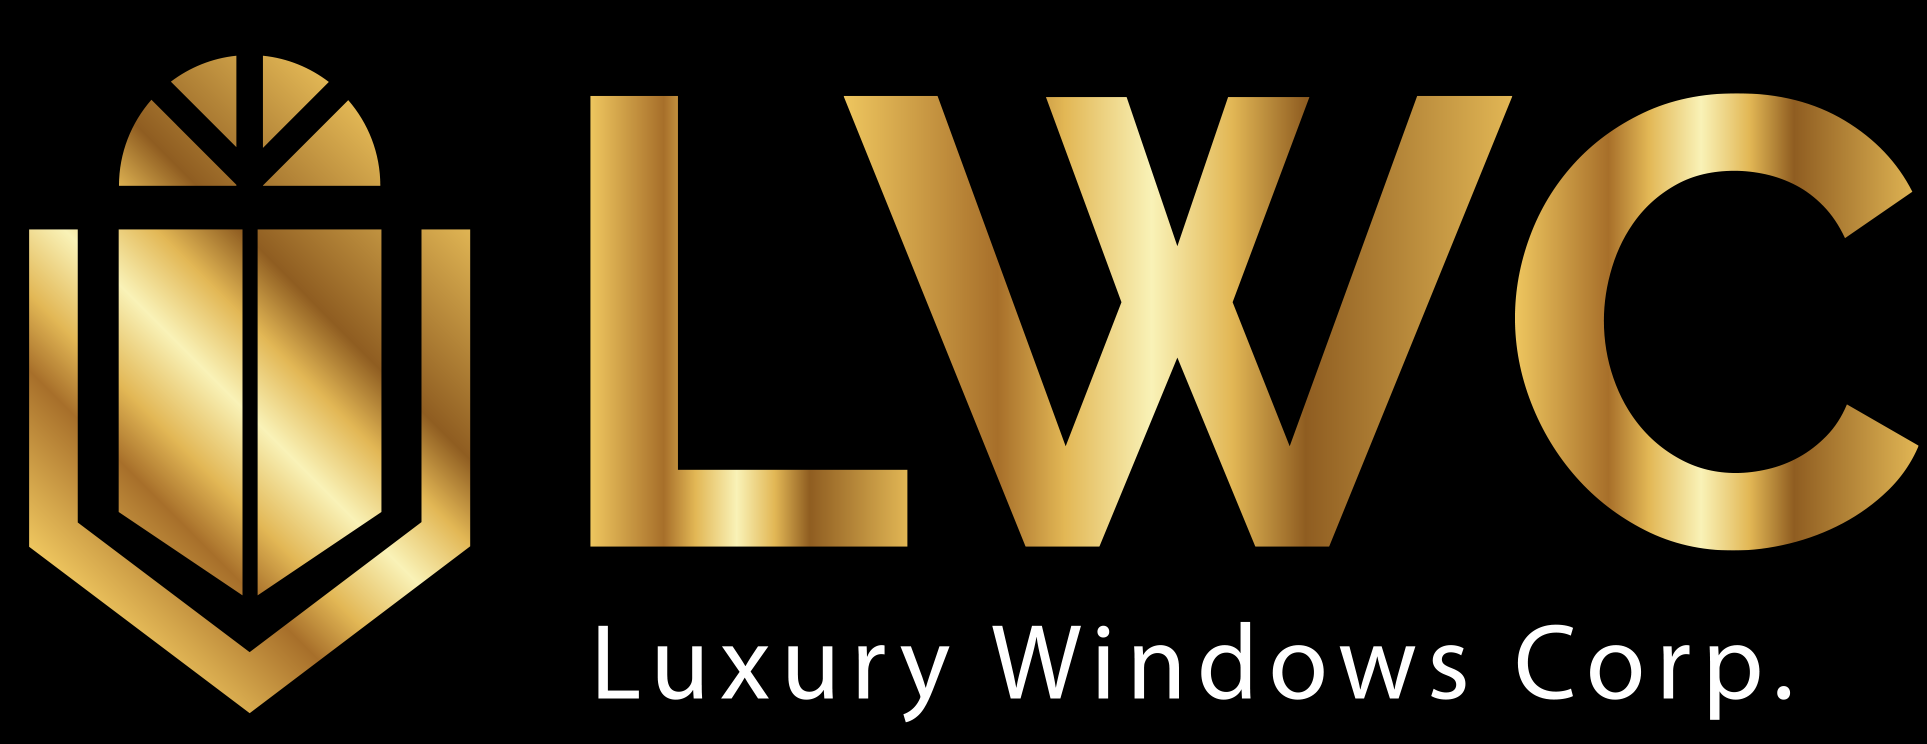 Luxury Windows Corp. Logo